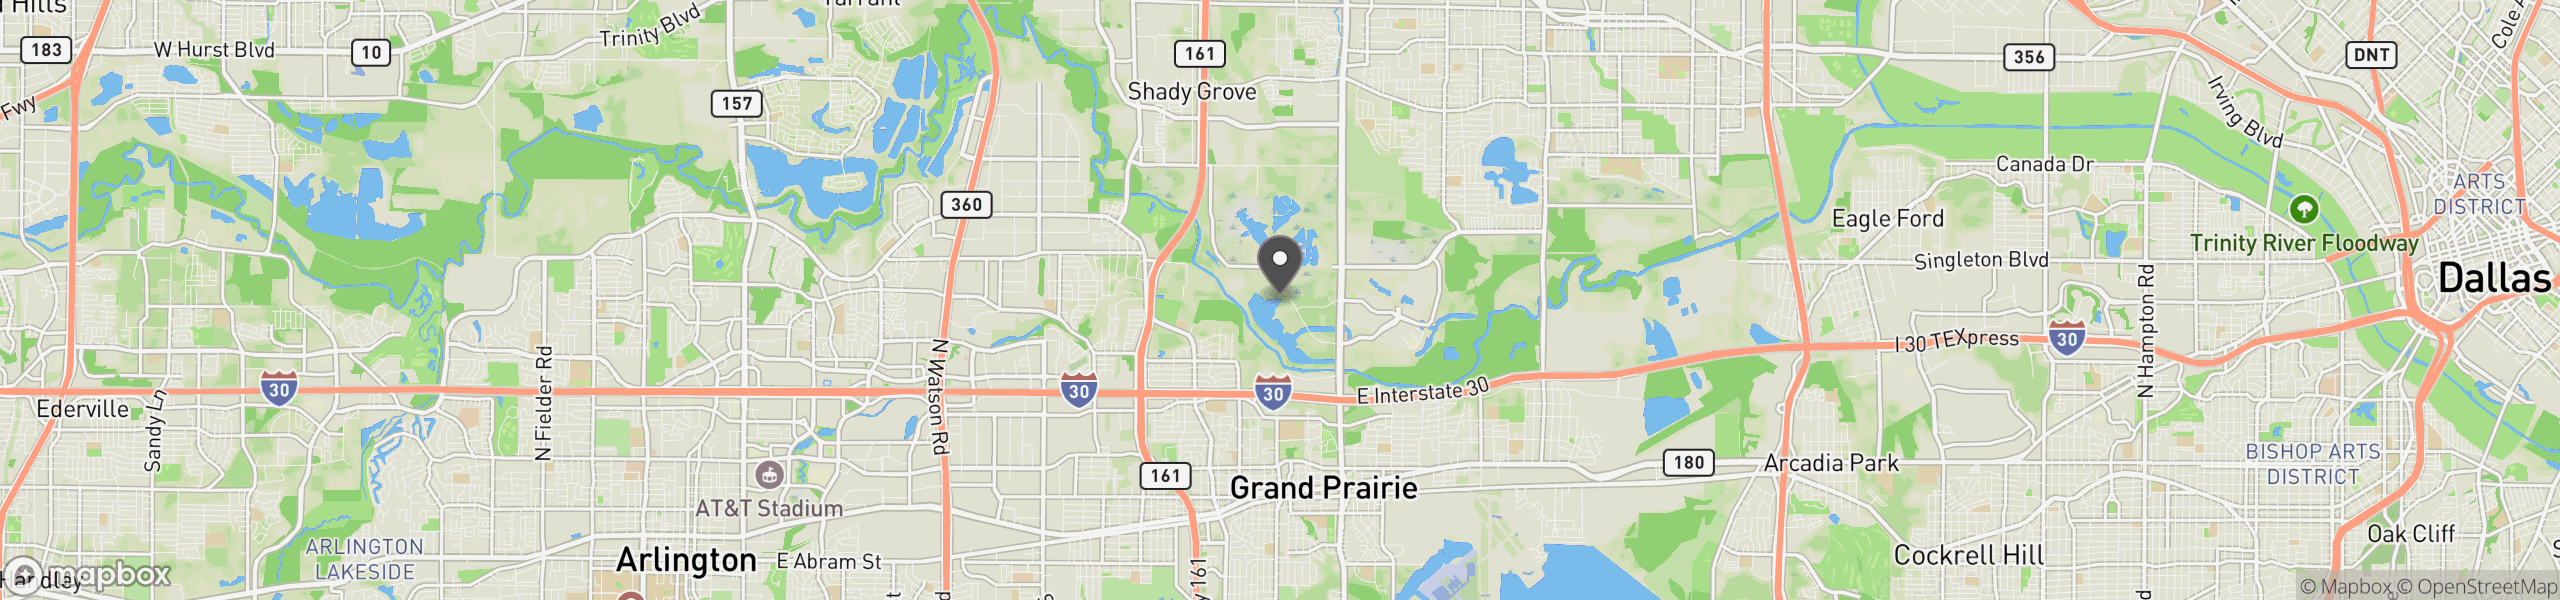 Grand Prairie, TX 75050